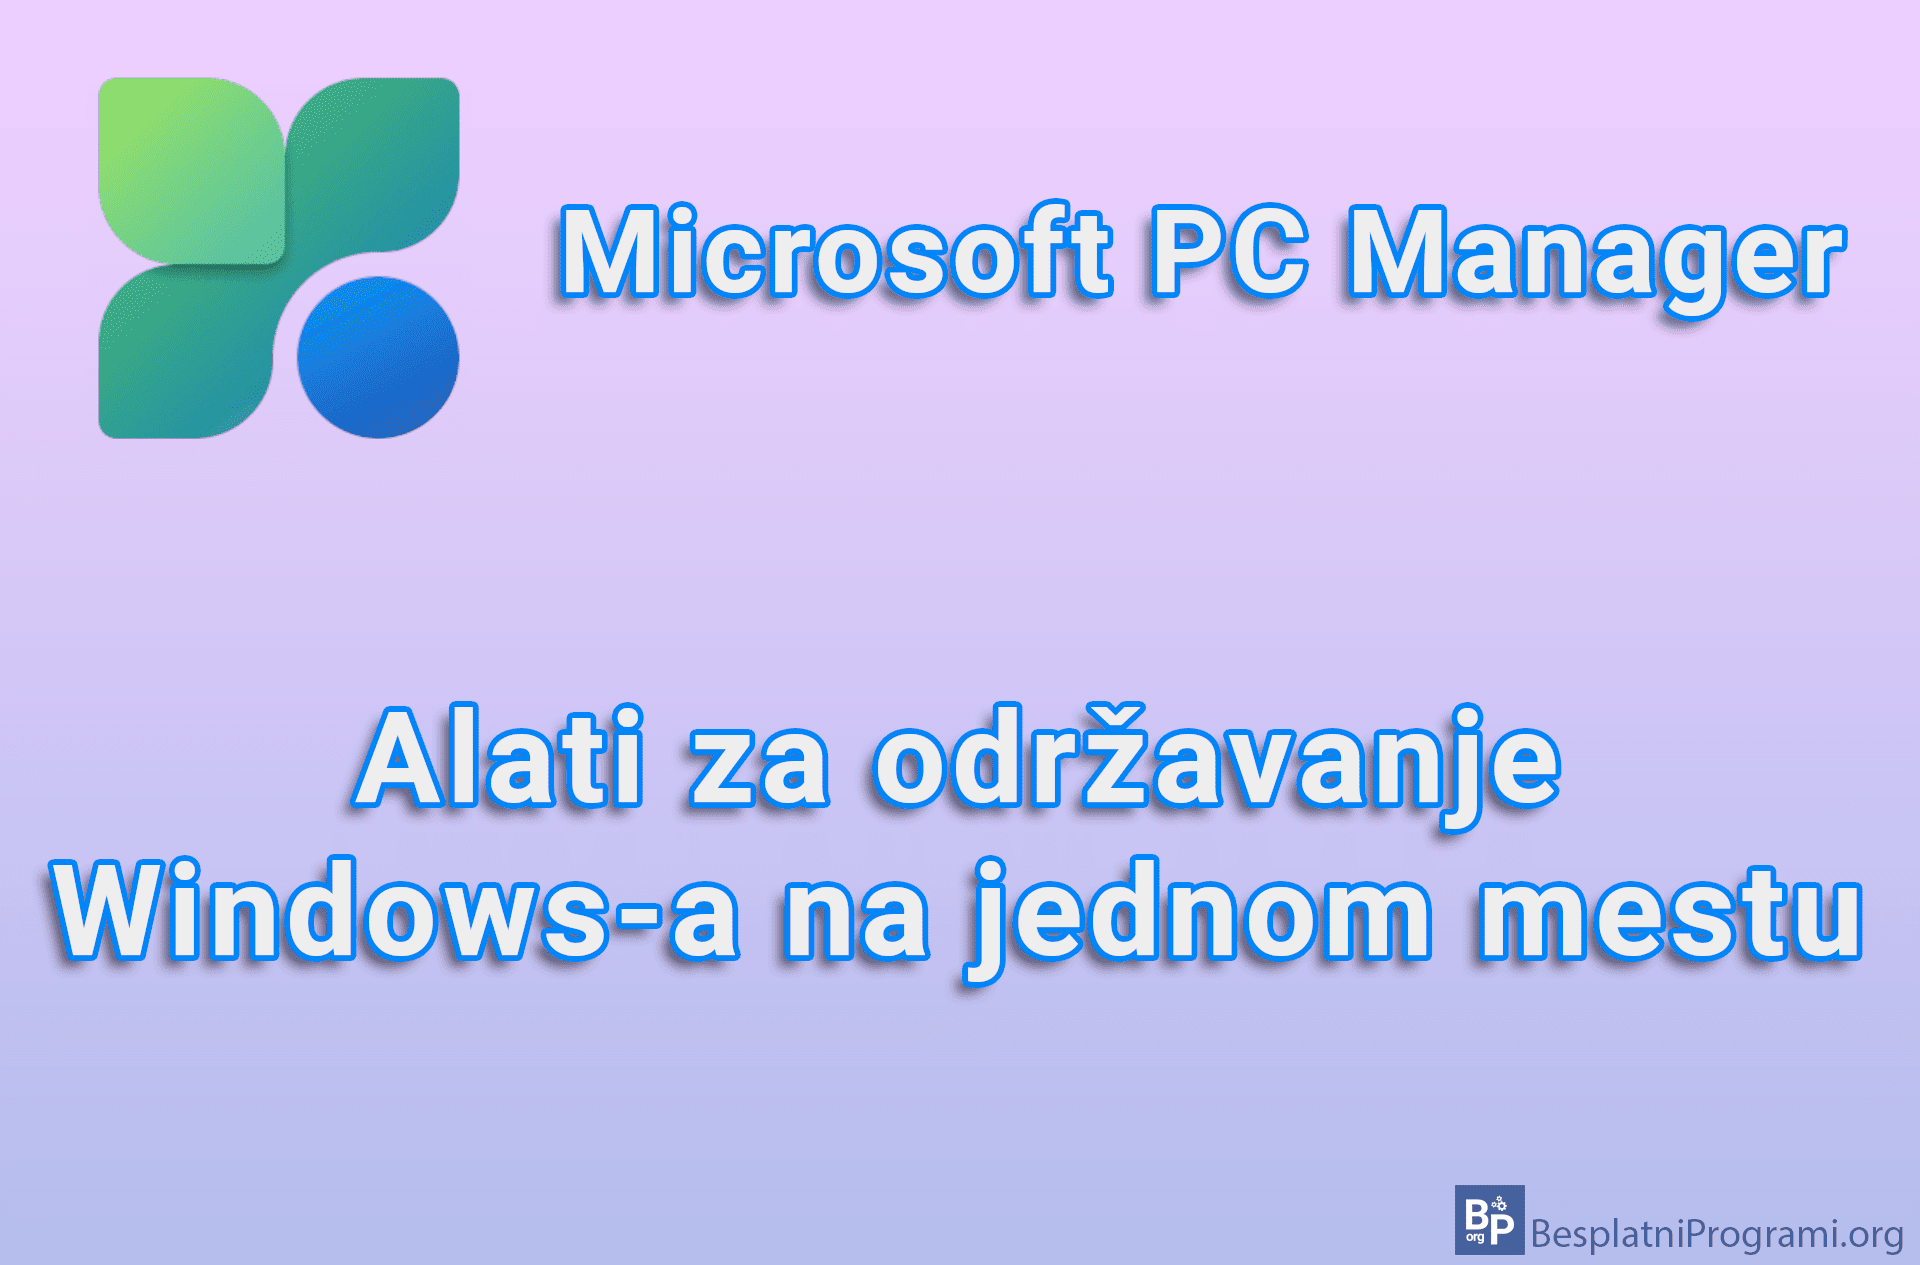 Microsoft PC Manager - Alati za održavanje Windows-a na jednom mestu